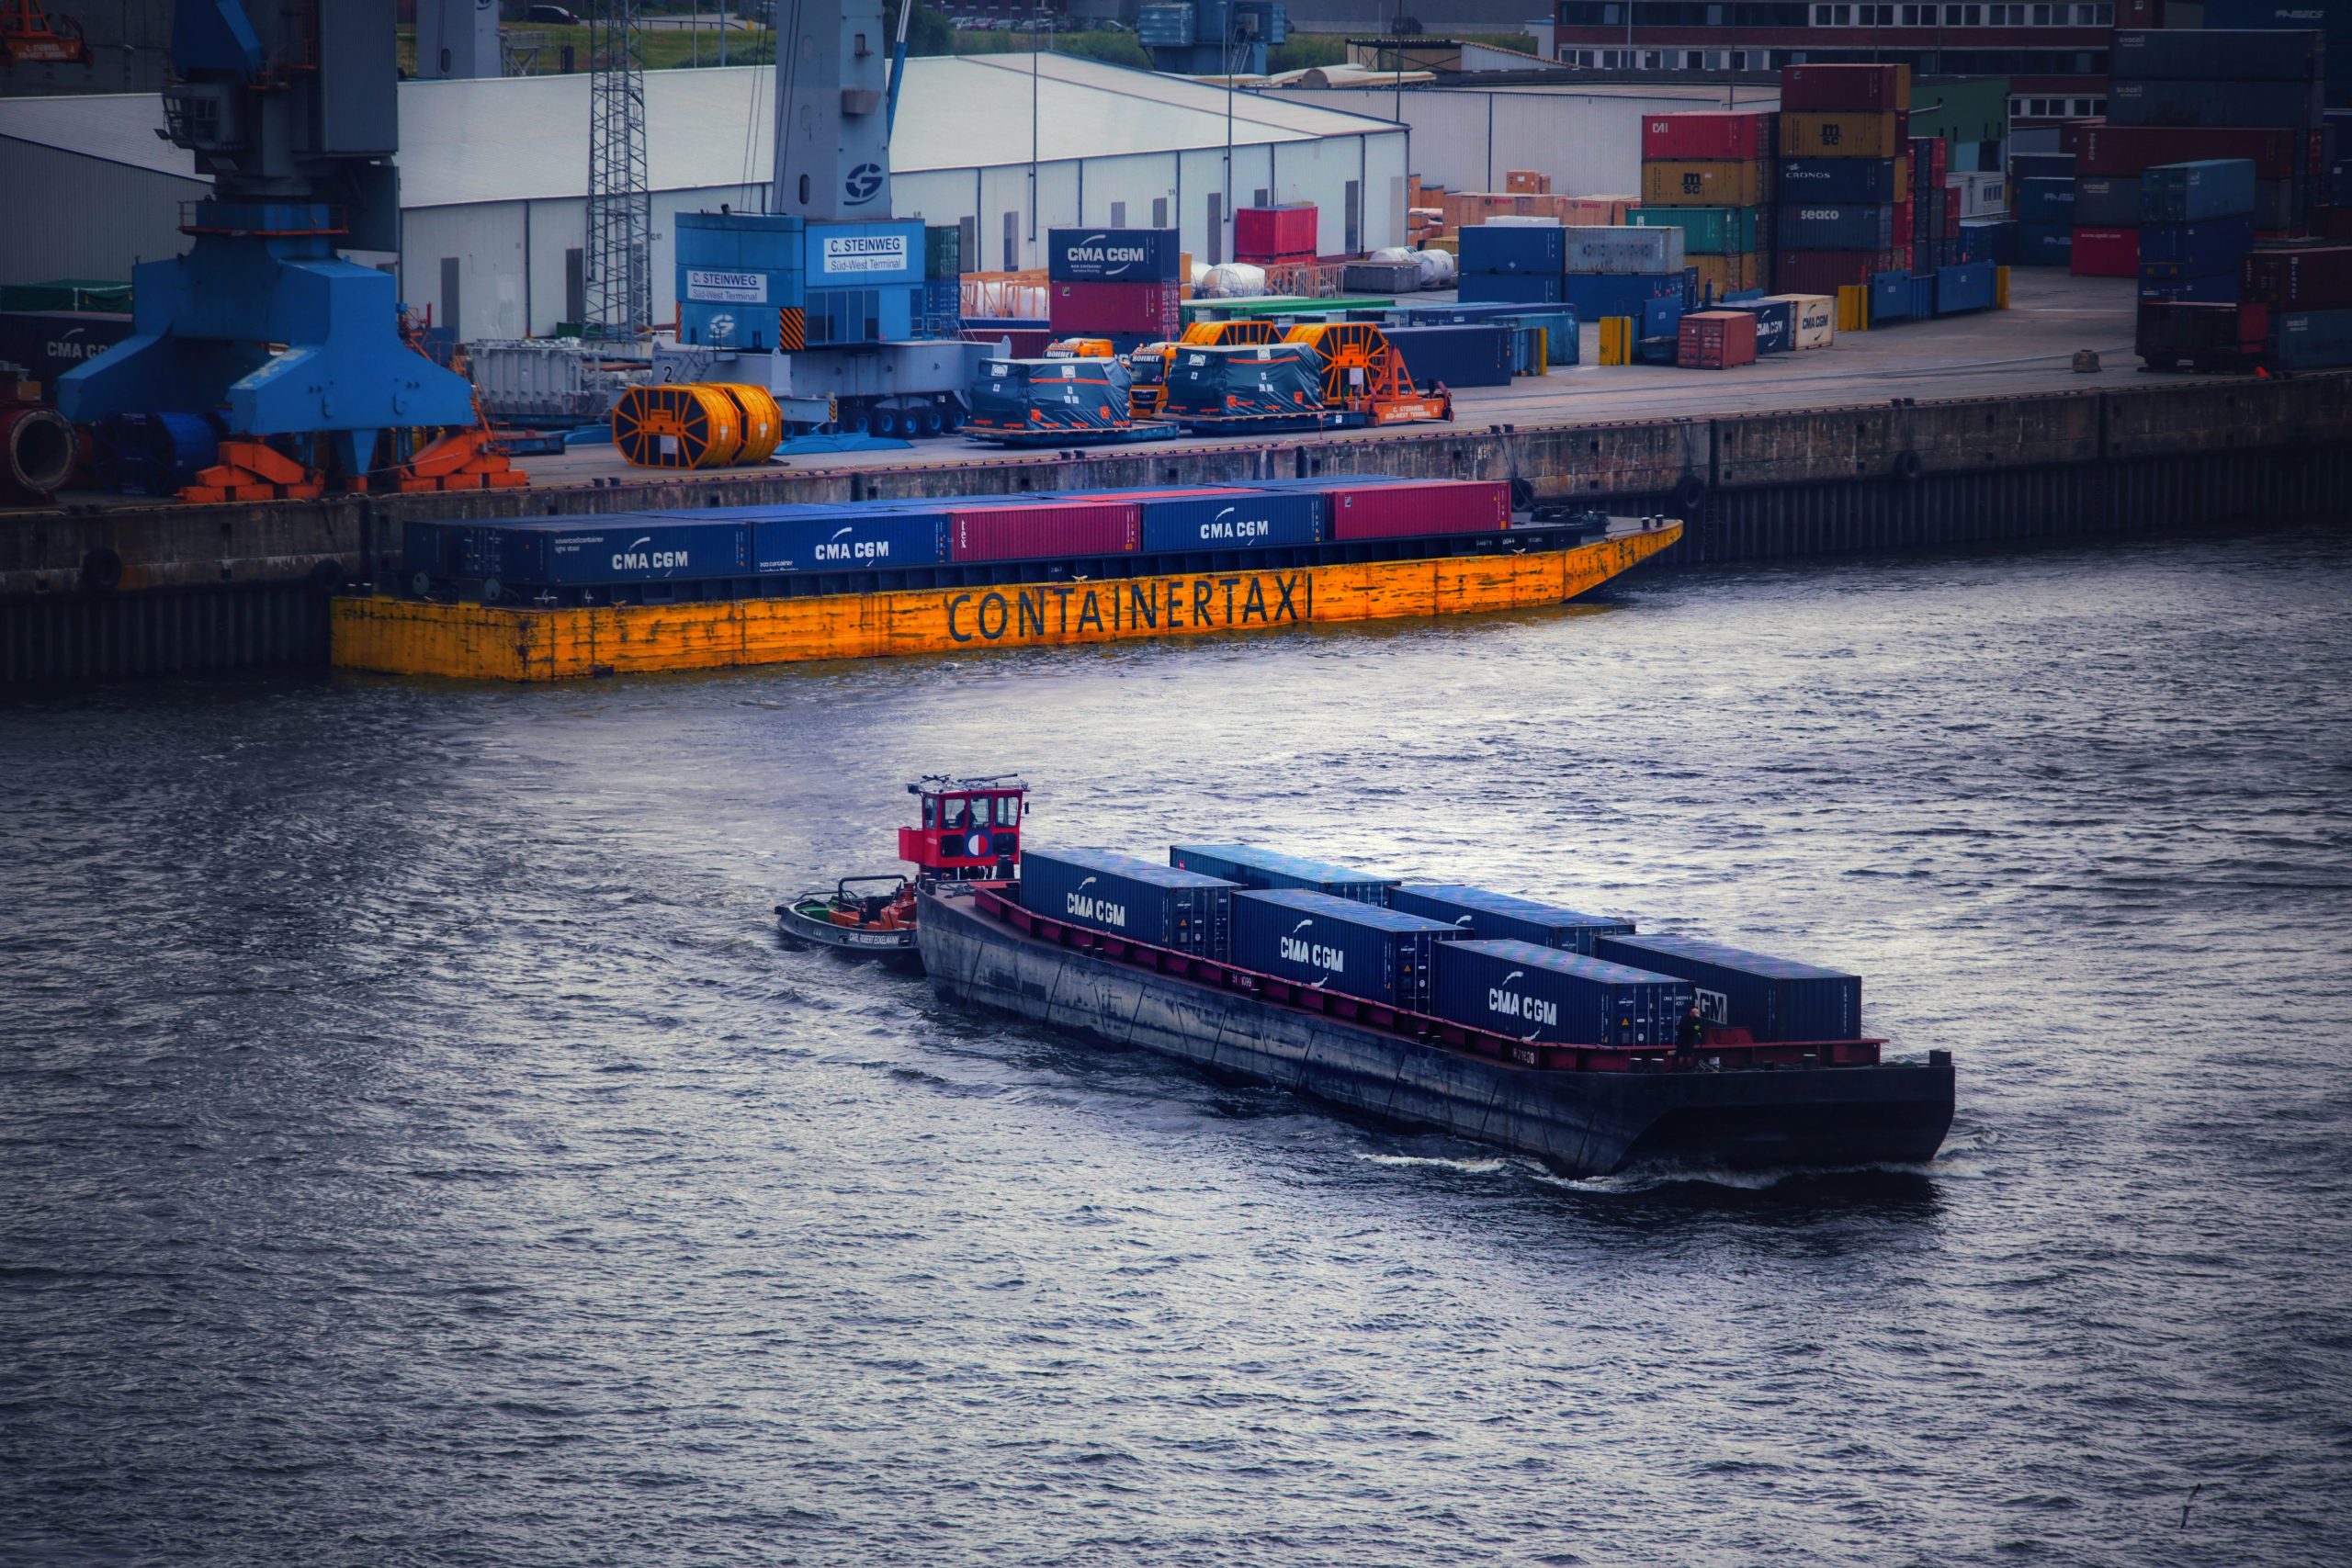 transport de bateaux : découvrez nos services de transport maritime pour votre bateau avec efficacité et sécurité.